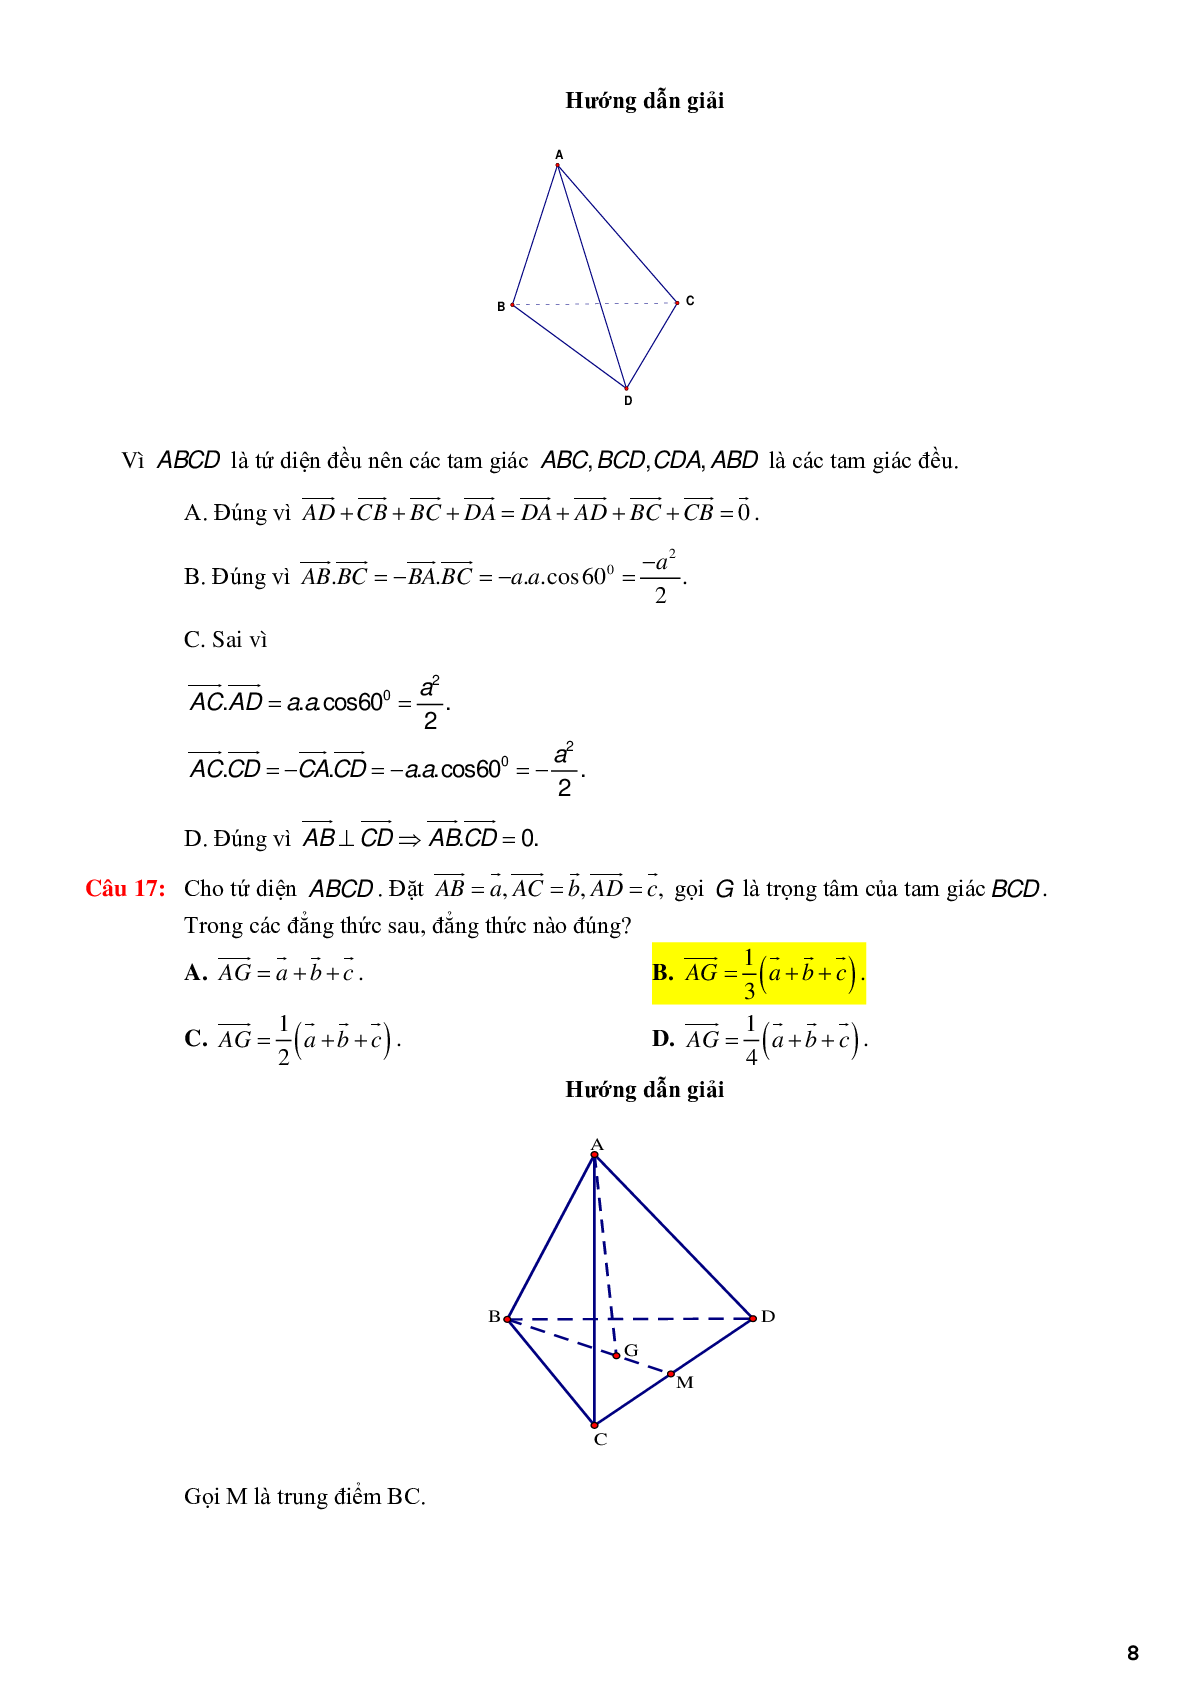 123 bài tập trắc nghiệm quan hệ vuông góc có lời giải chi tiết (trang 8)